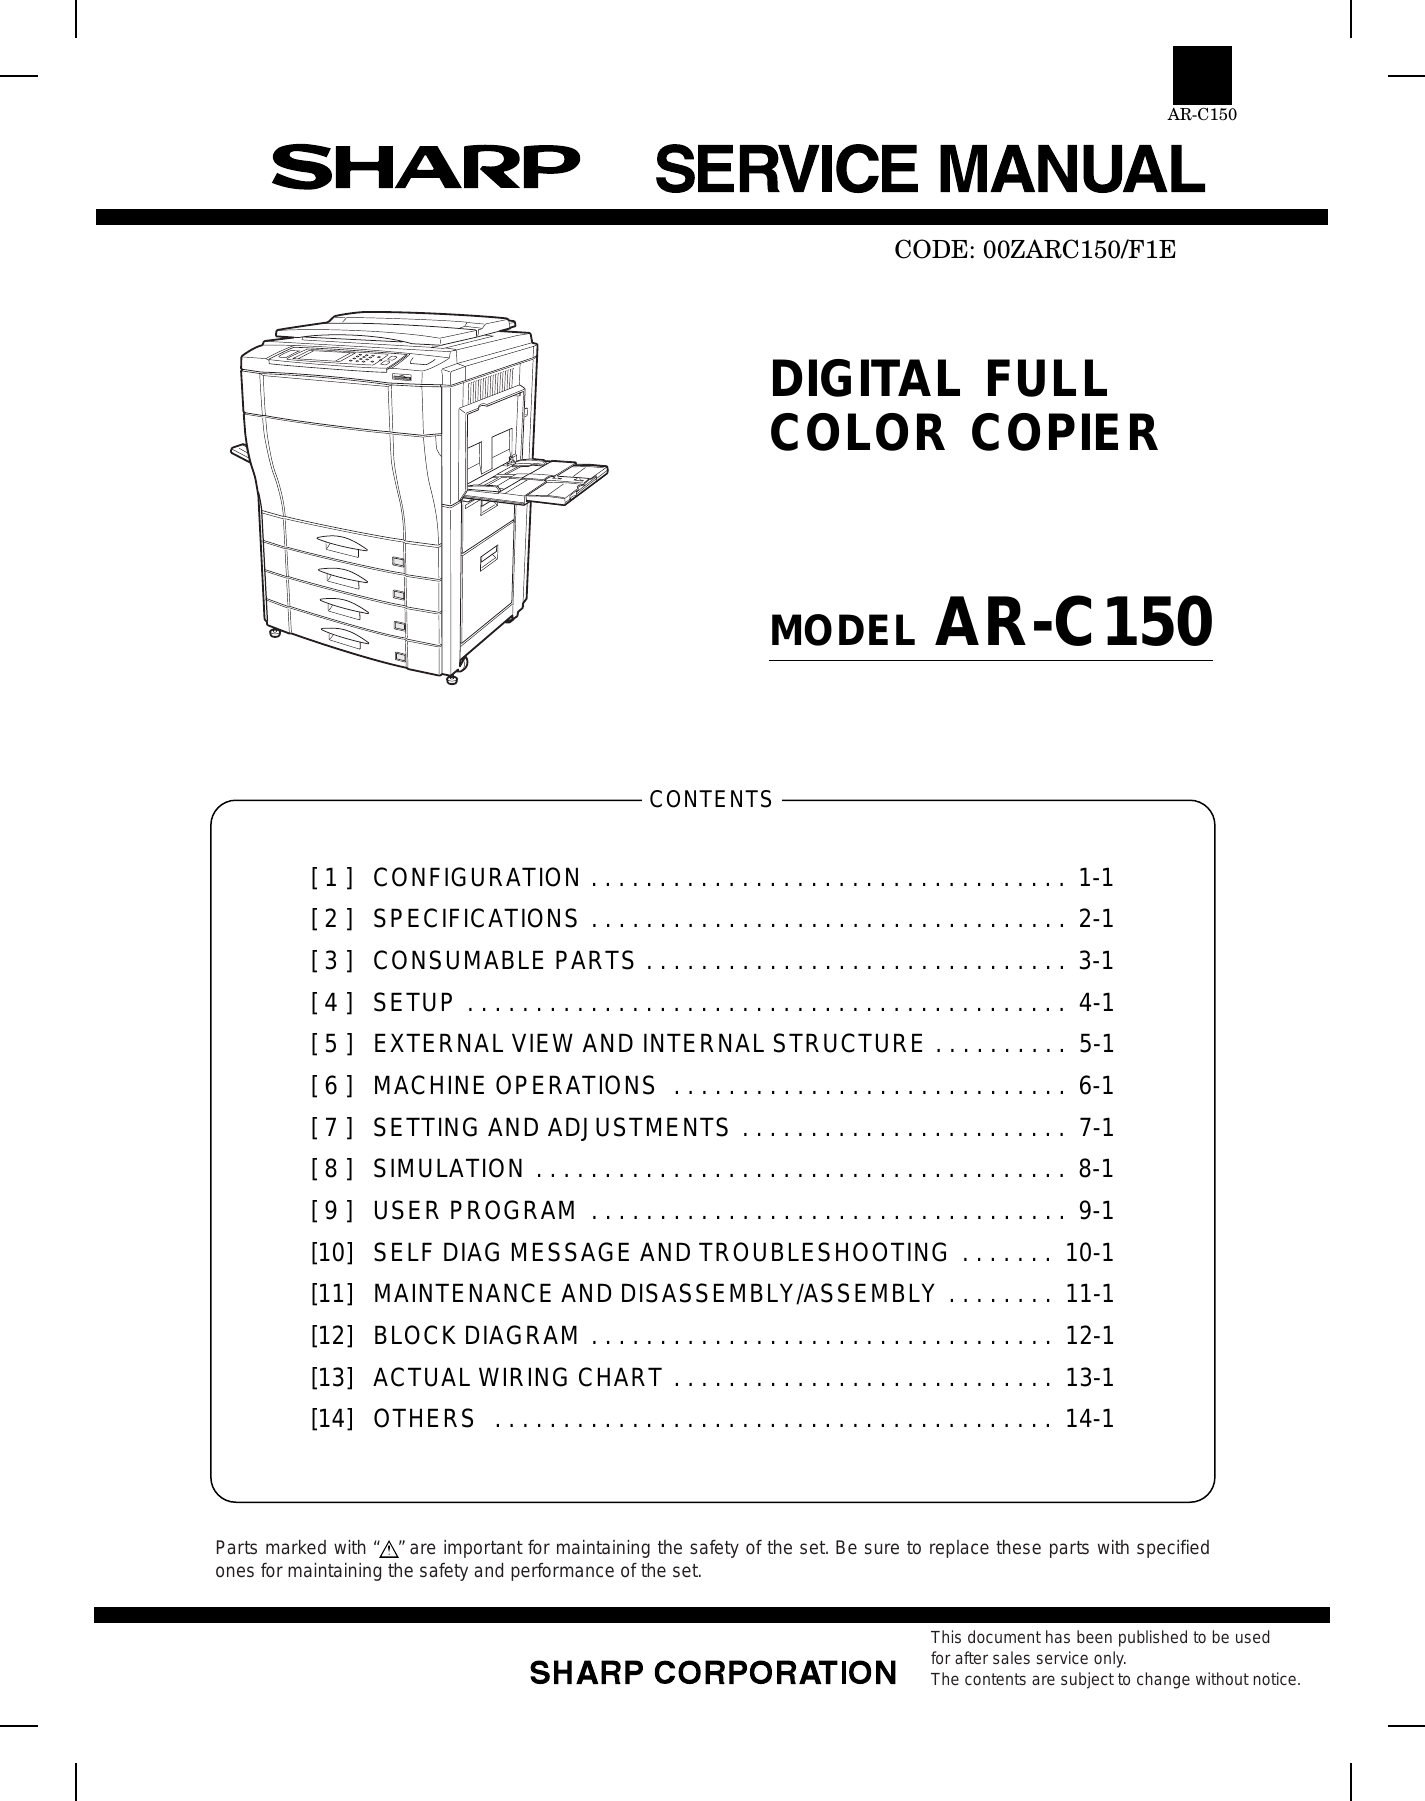 Sharp AR C150 Color copier service manual Preview image 2